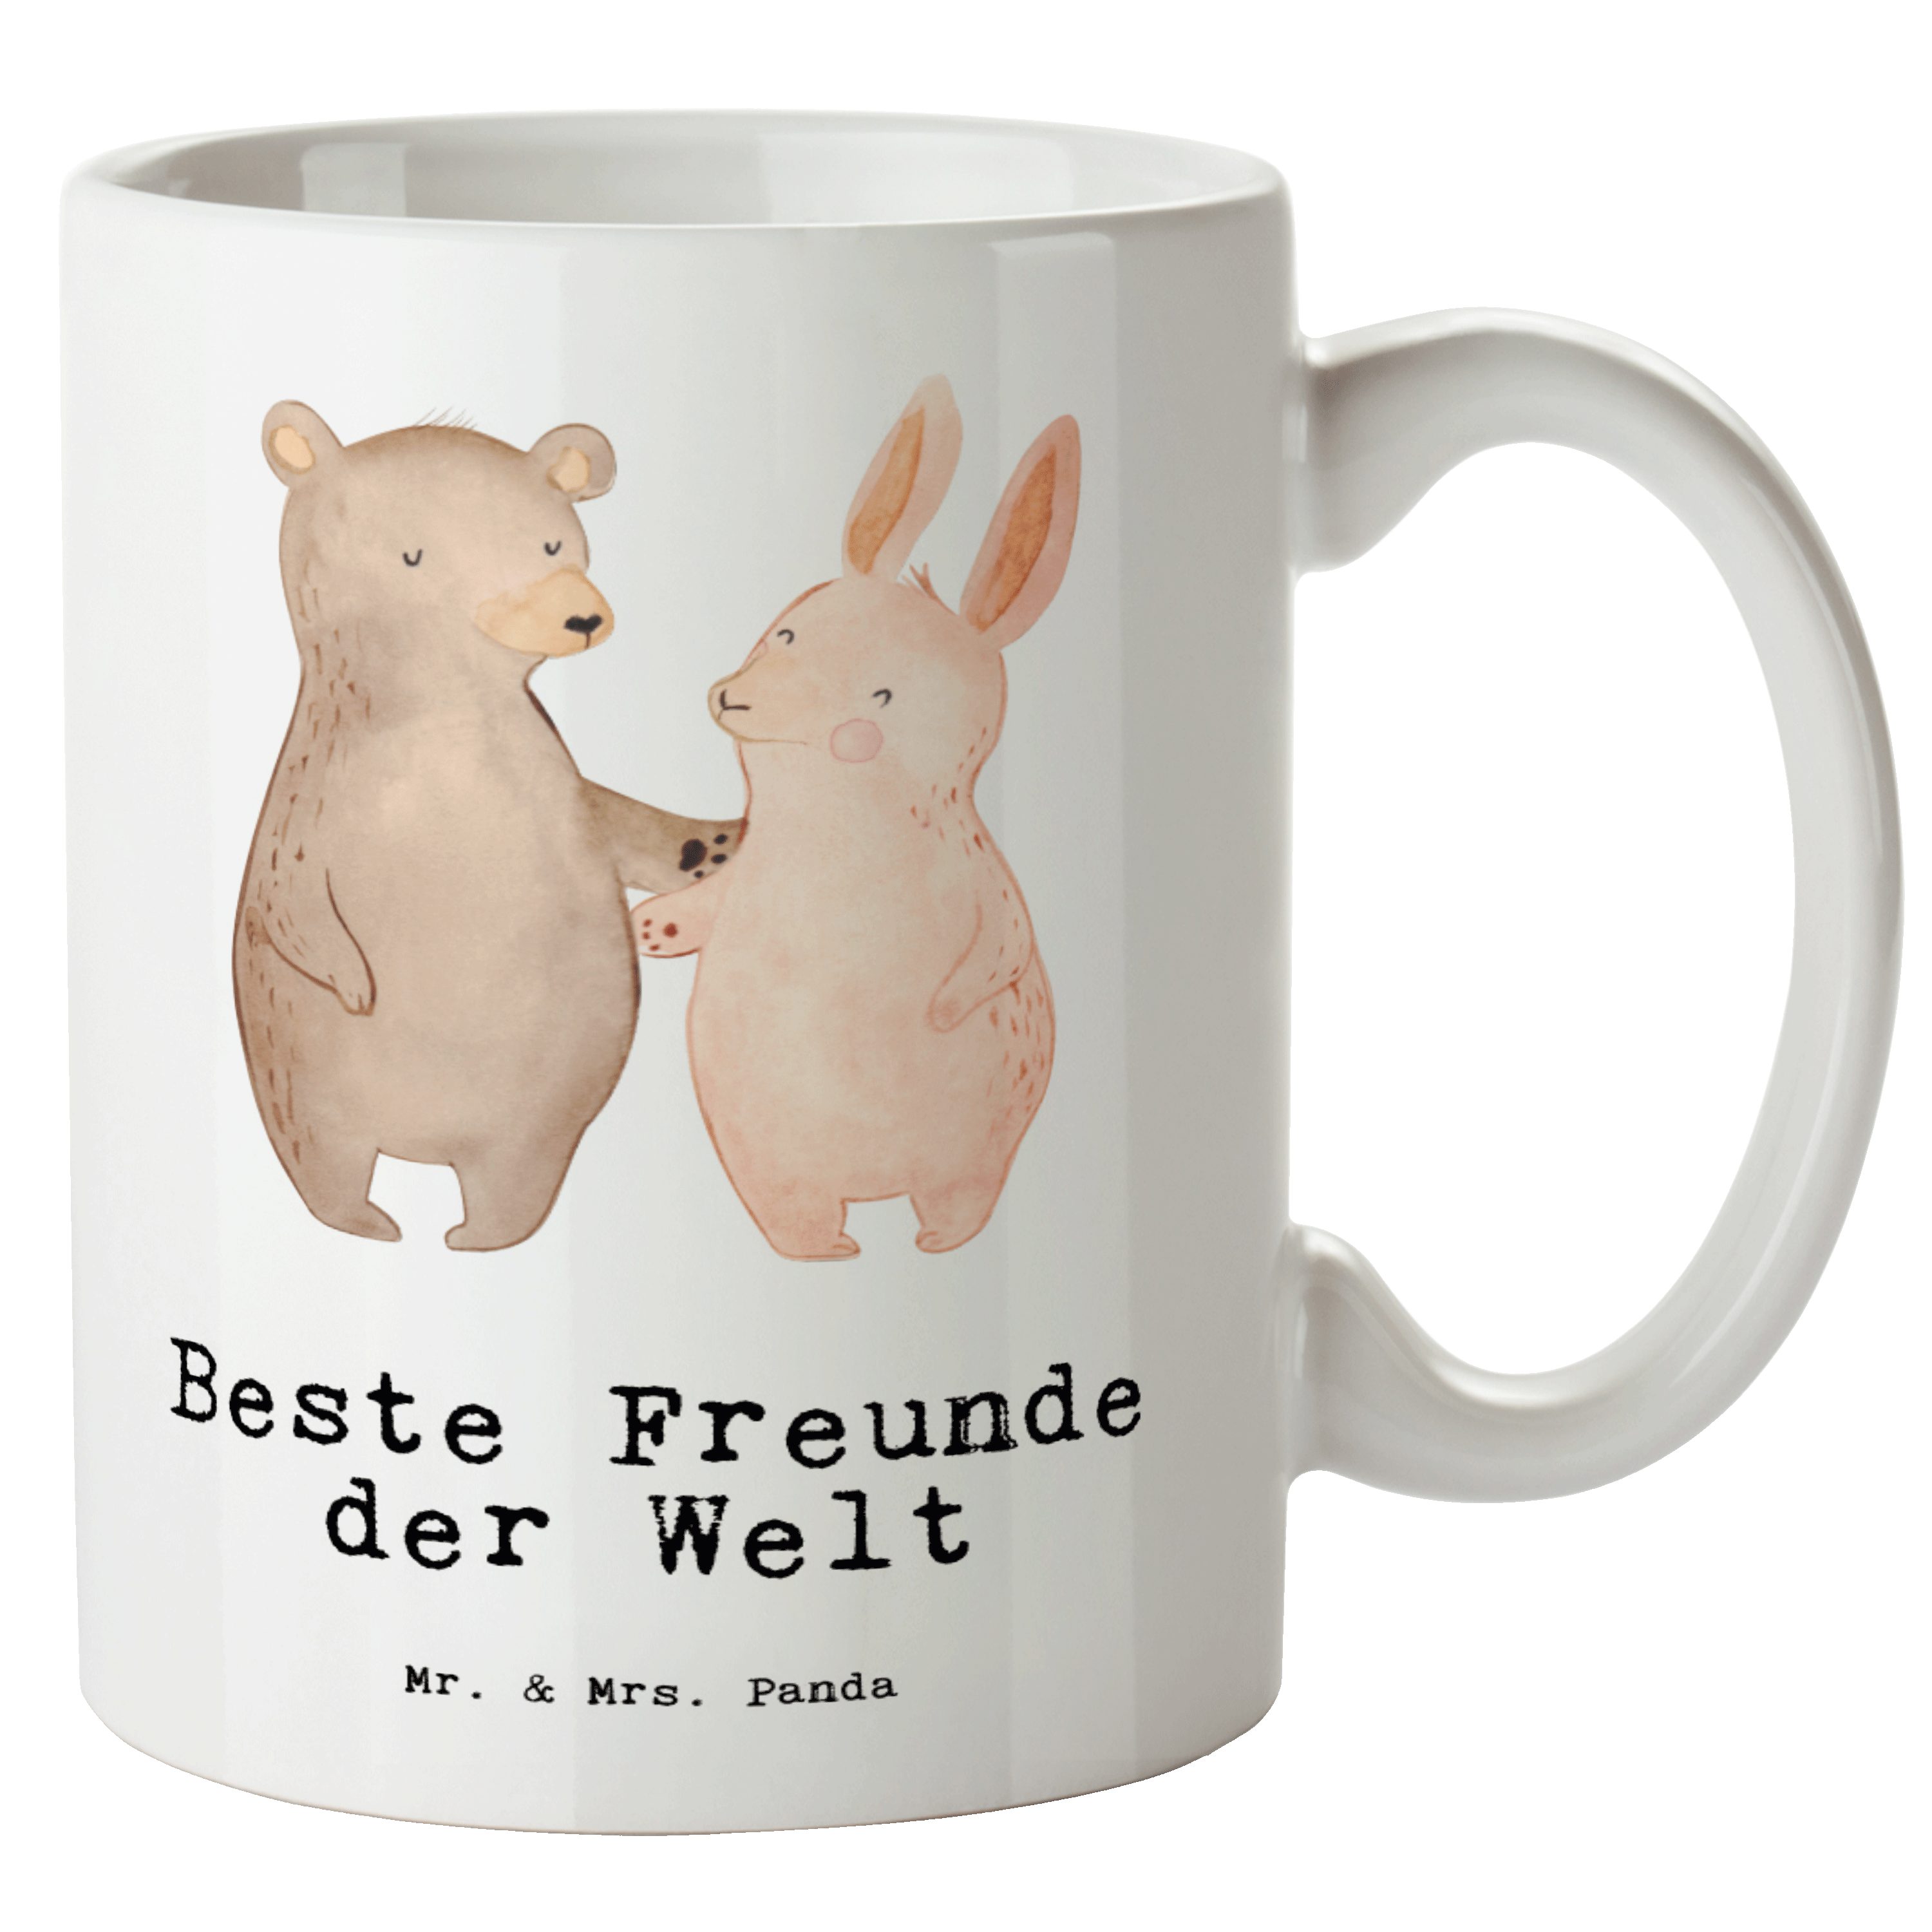 Mr. & Mrs. Panda Tasse Hase Beste Freunde der Welt - Weiß - Geschenk, für, Jumbo Tasse, Gros, XL Tasse Keramik